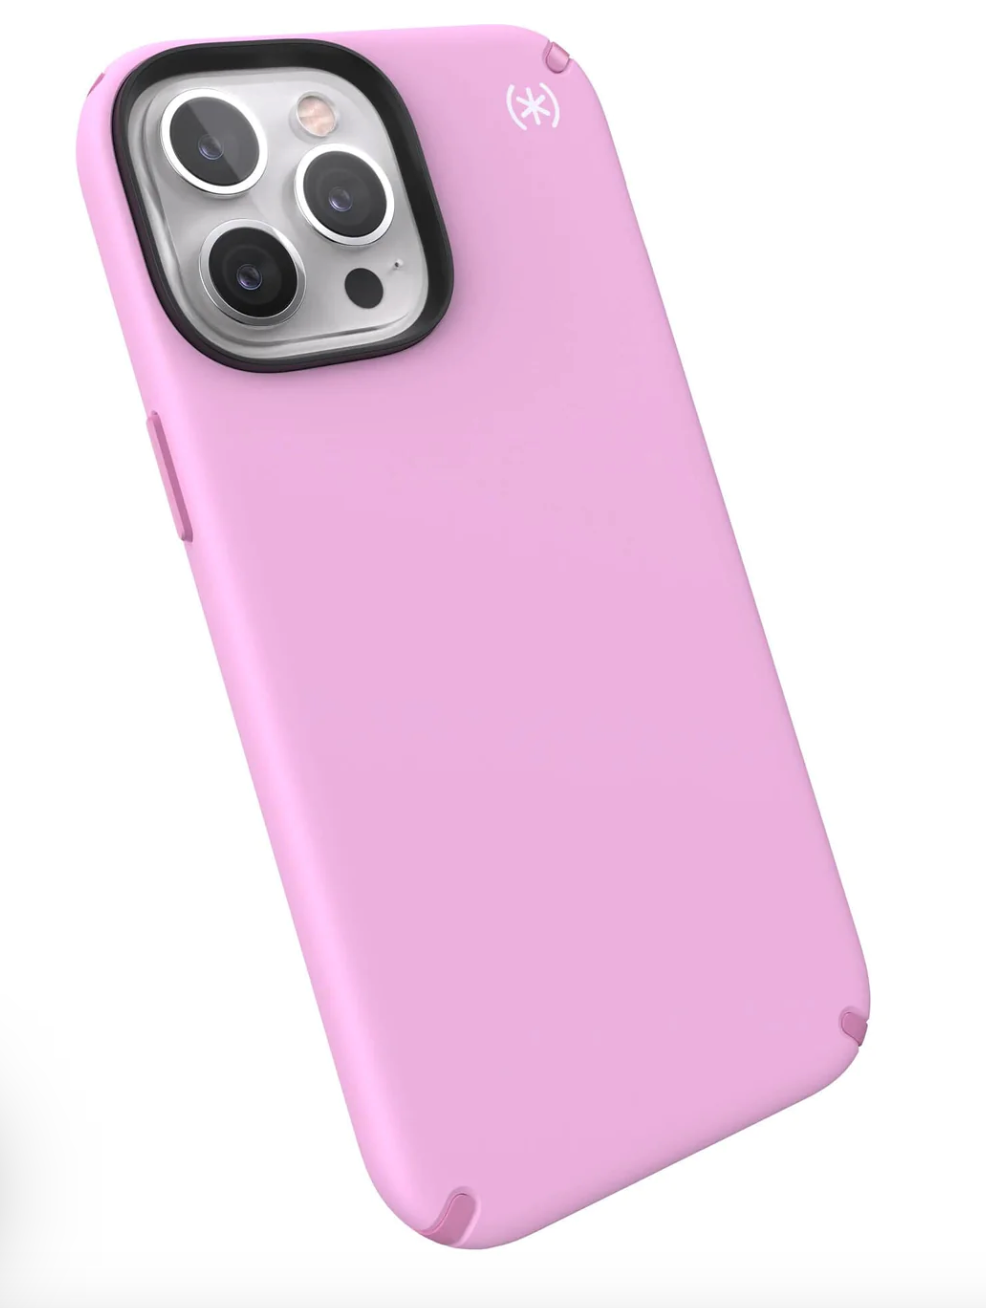 Speck Presidio2 Pro Case For Apple Iphone 13 Pro Max/12 Pro Max - Aurora Purple, Fresh Pink And White